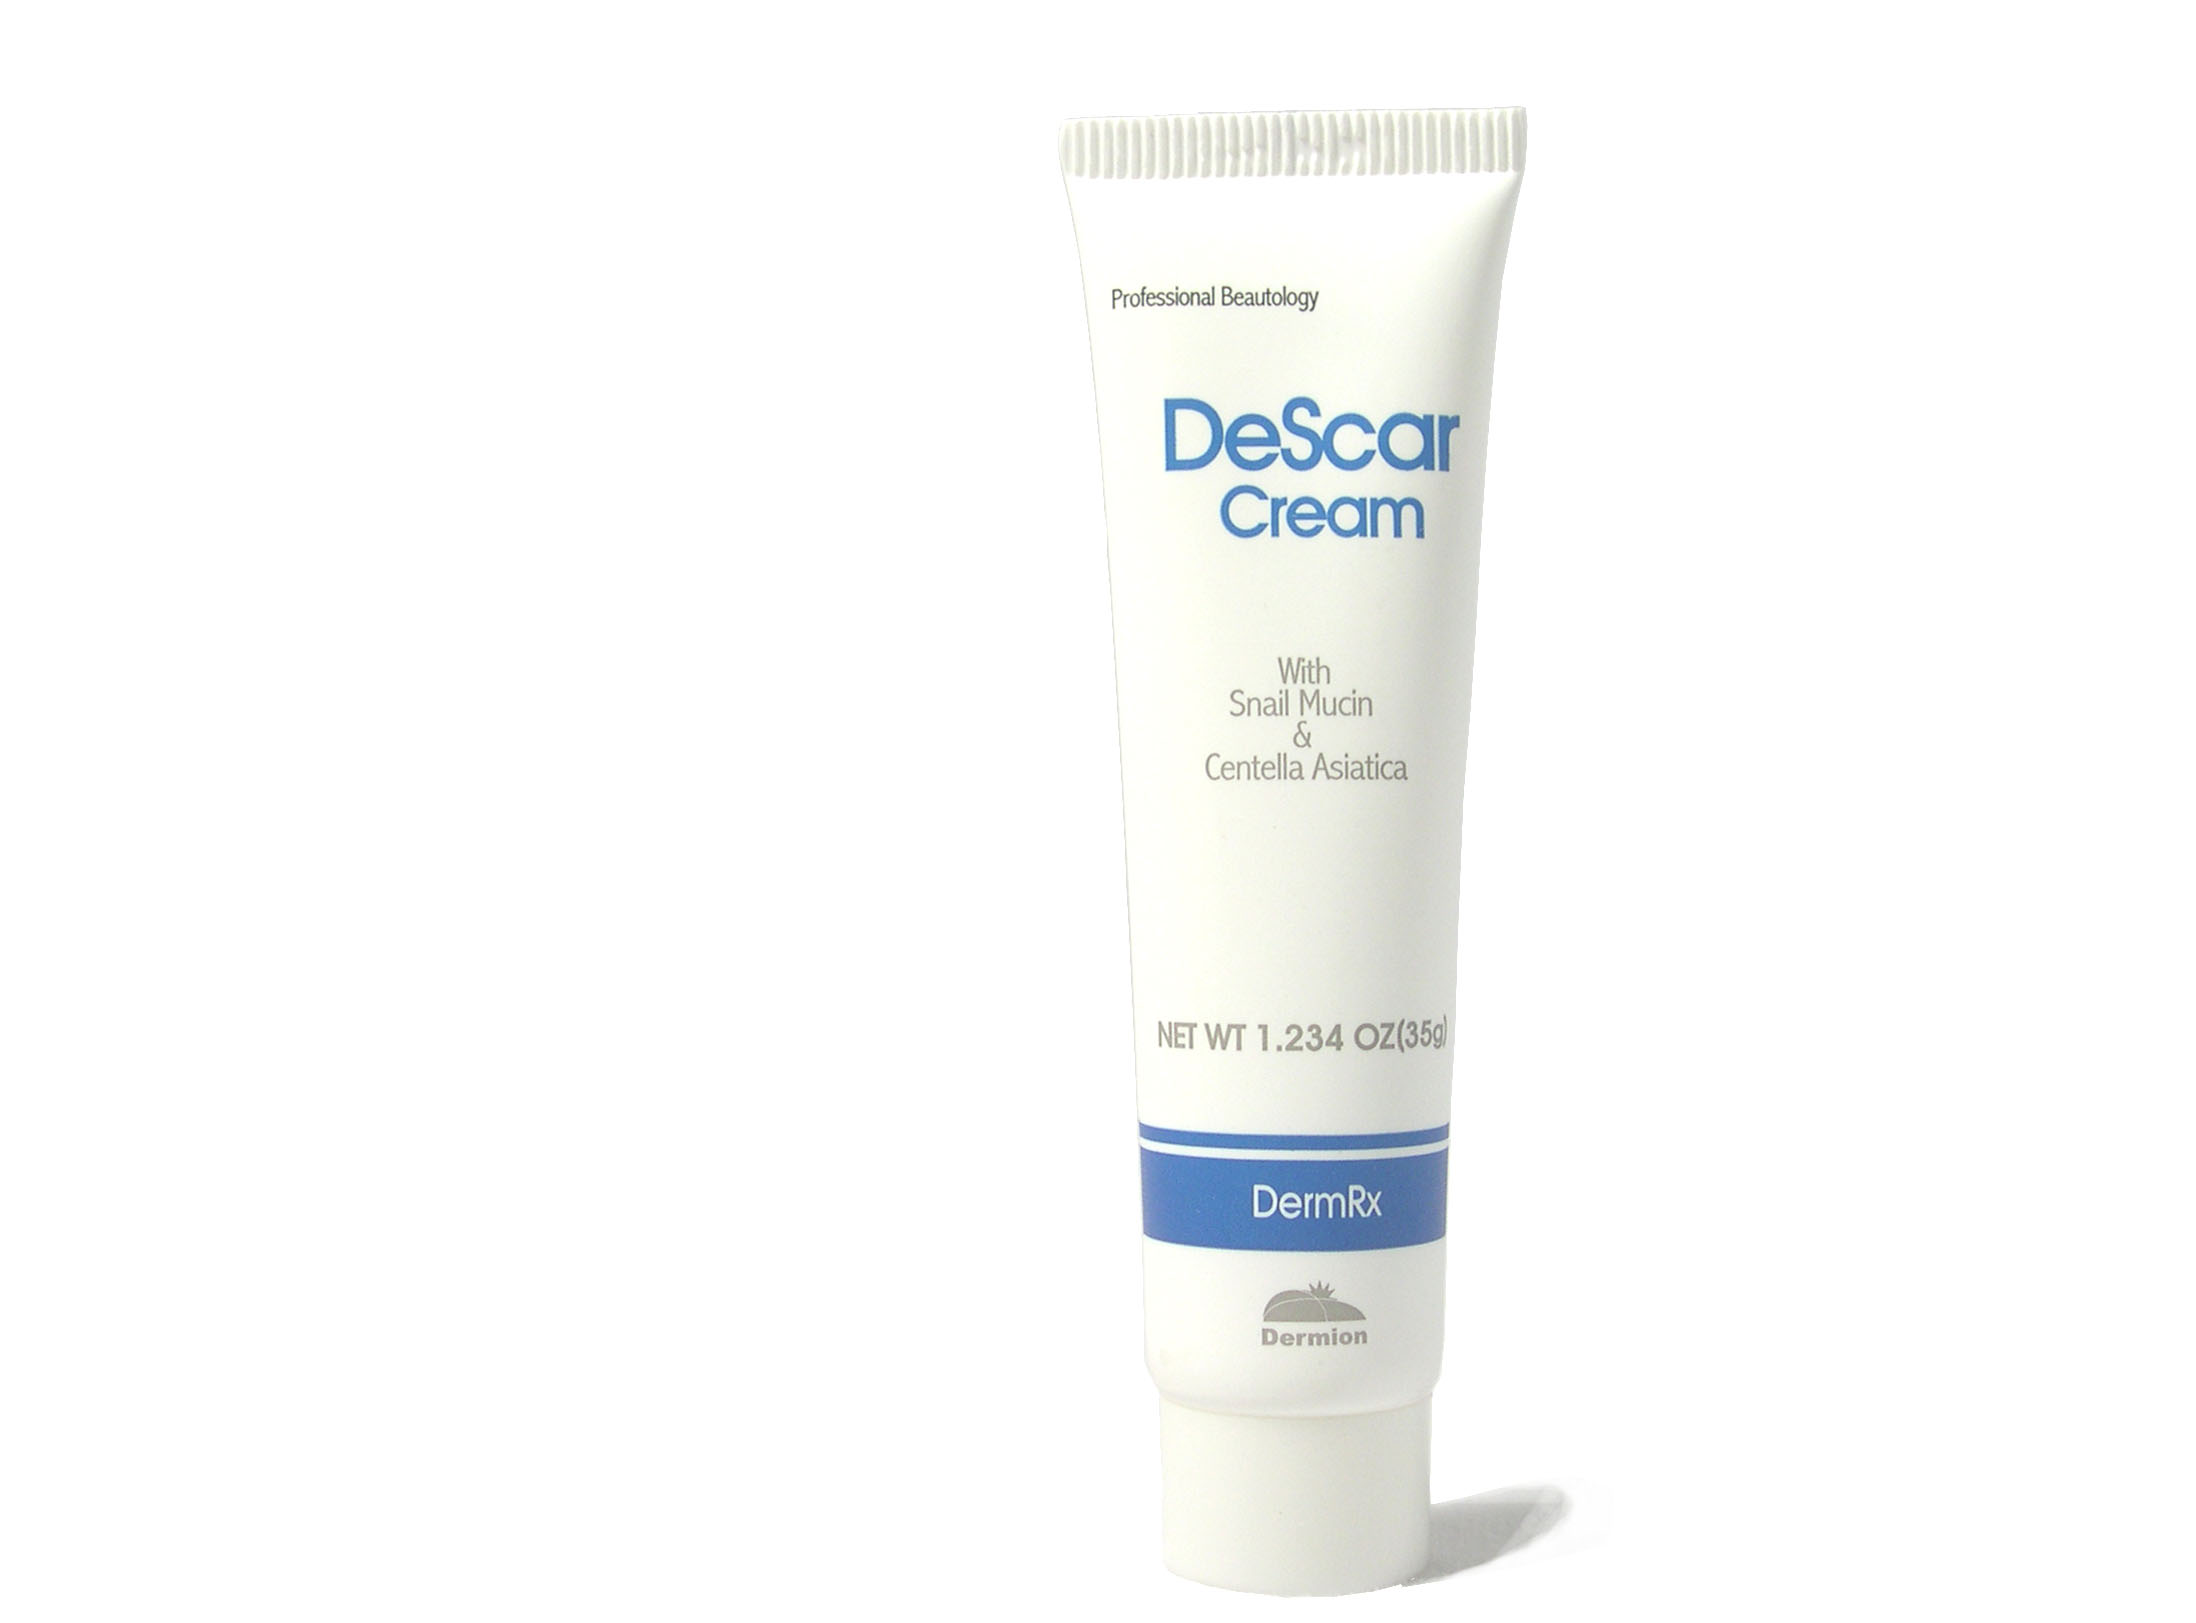 DeScar Cream